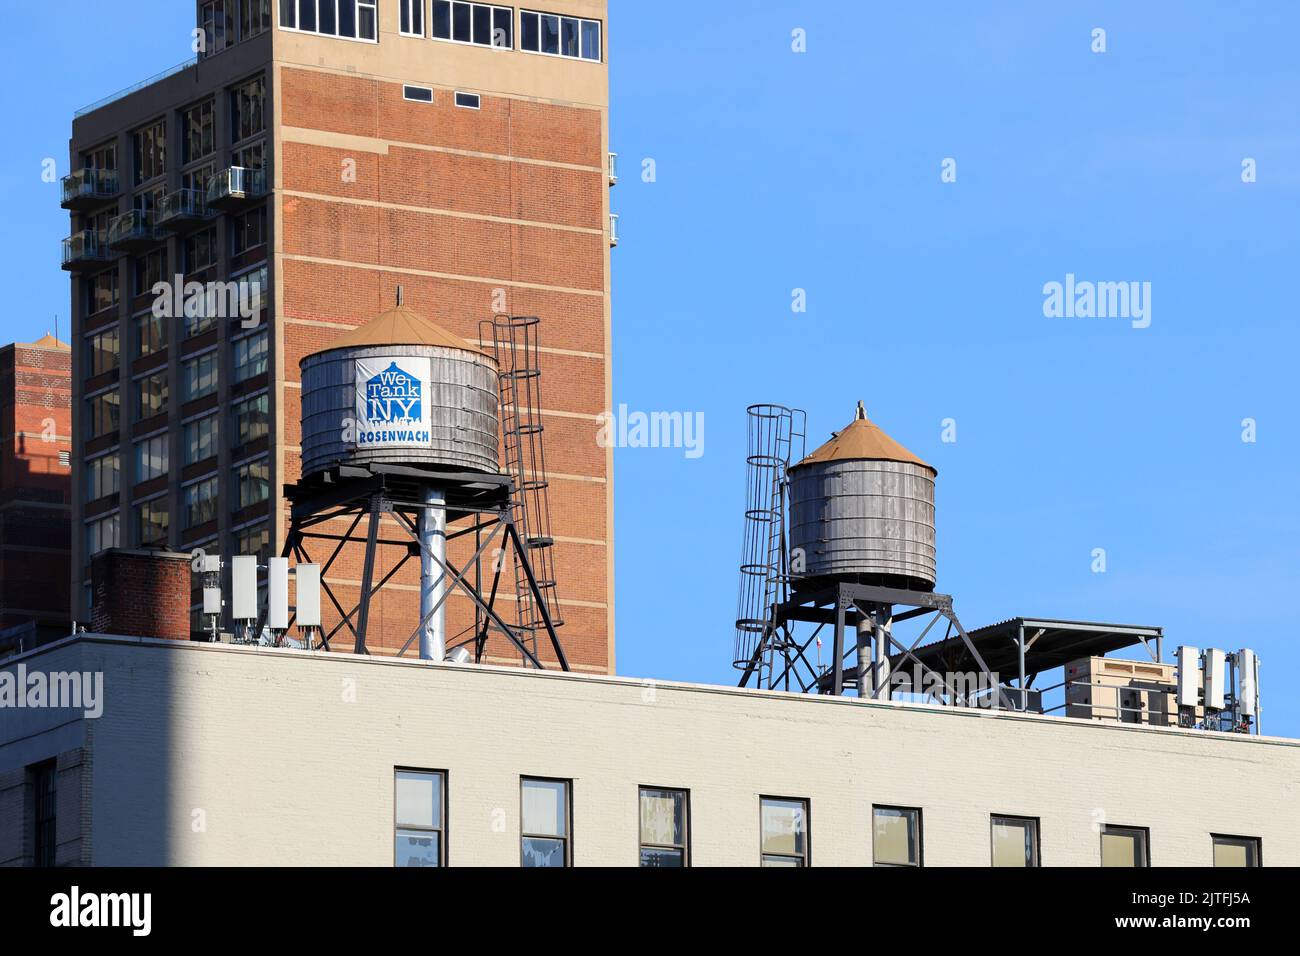 Serbatoi d'acqua in legno di Rosenwach sul tetto di New York City. I serbatoi dell'acqua vengono utilizzati per immagazzinare l'acqua per mantenere la pressione dell'acqua in un edificio. Foto Stock